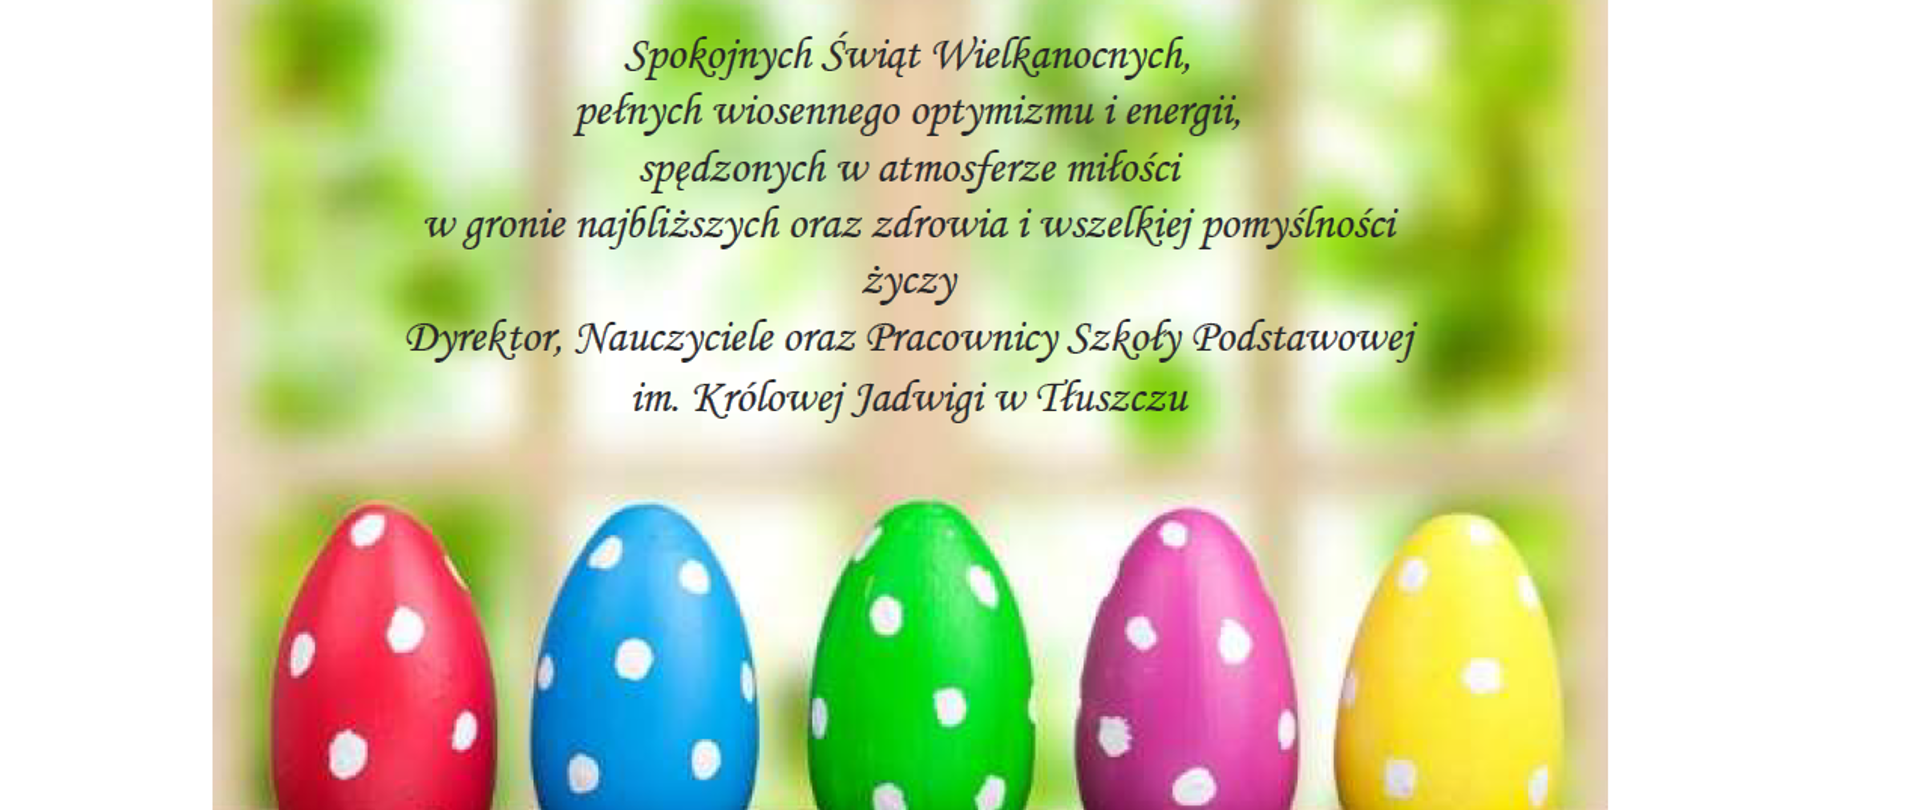 Pięć kolorowych w kropki jajek. Nad nimi : Spokojnych Świat Wielkanocnych, pełnych wiosennego optymizmu i energii, spędzonych w atmosferze miłości w gronie najbliższych oraz zdrowia i wszelkiej pomyślności